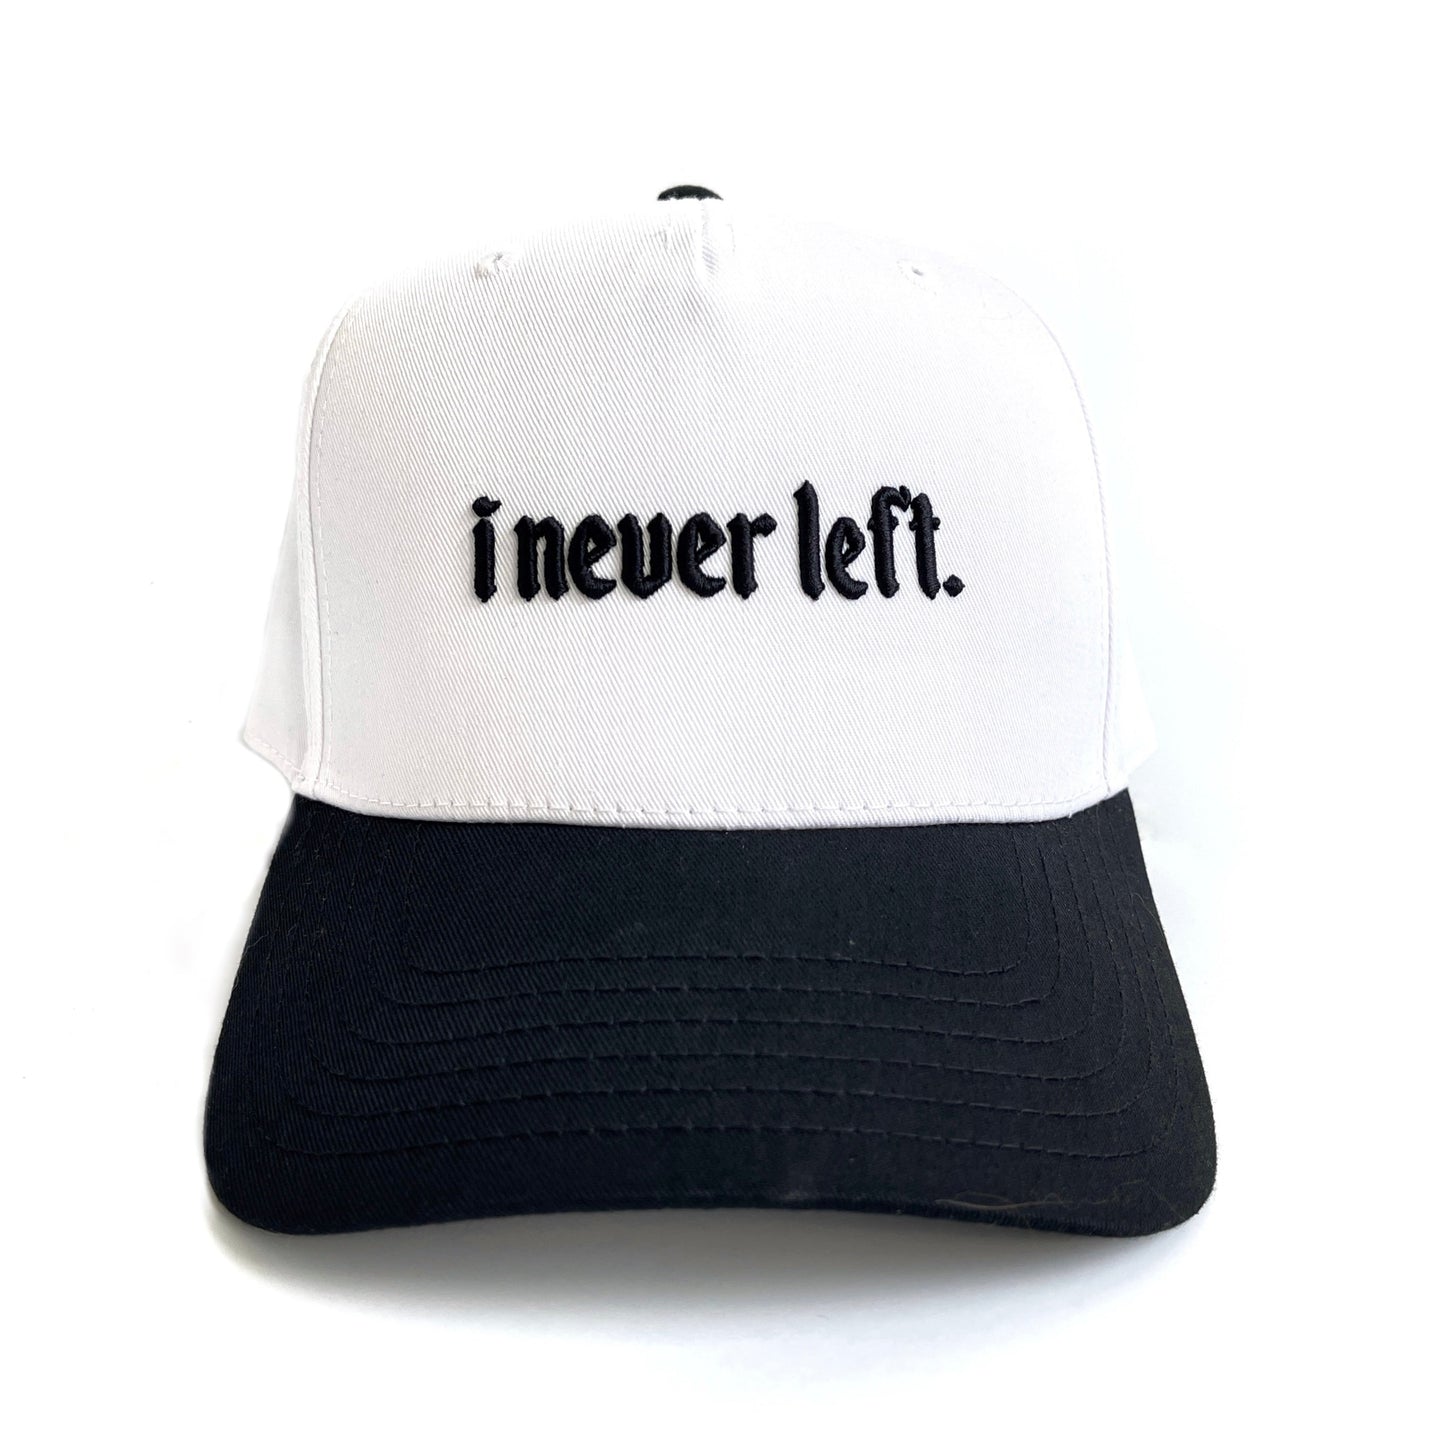 I NEVER LEFT Hat